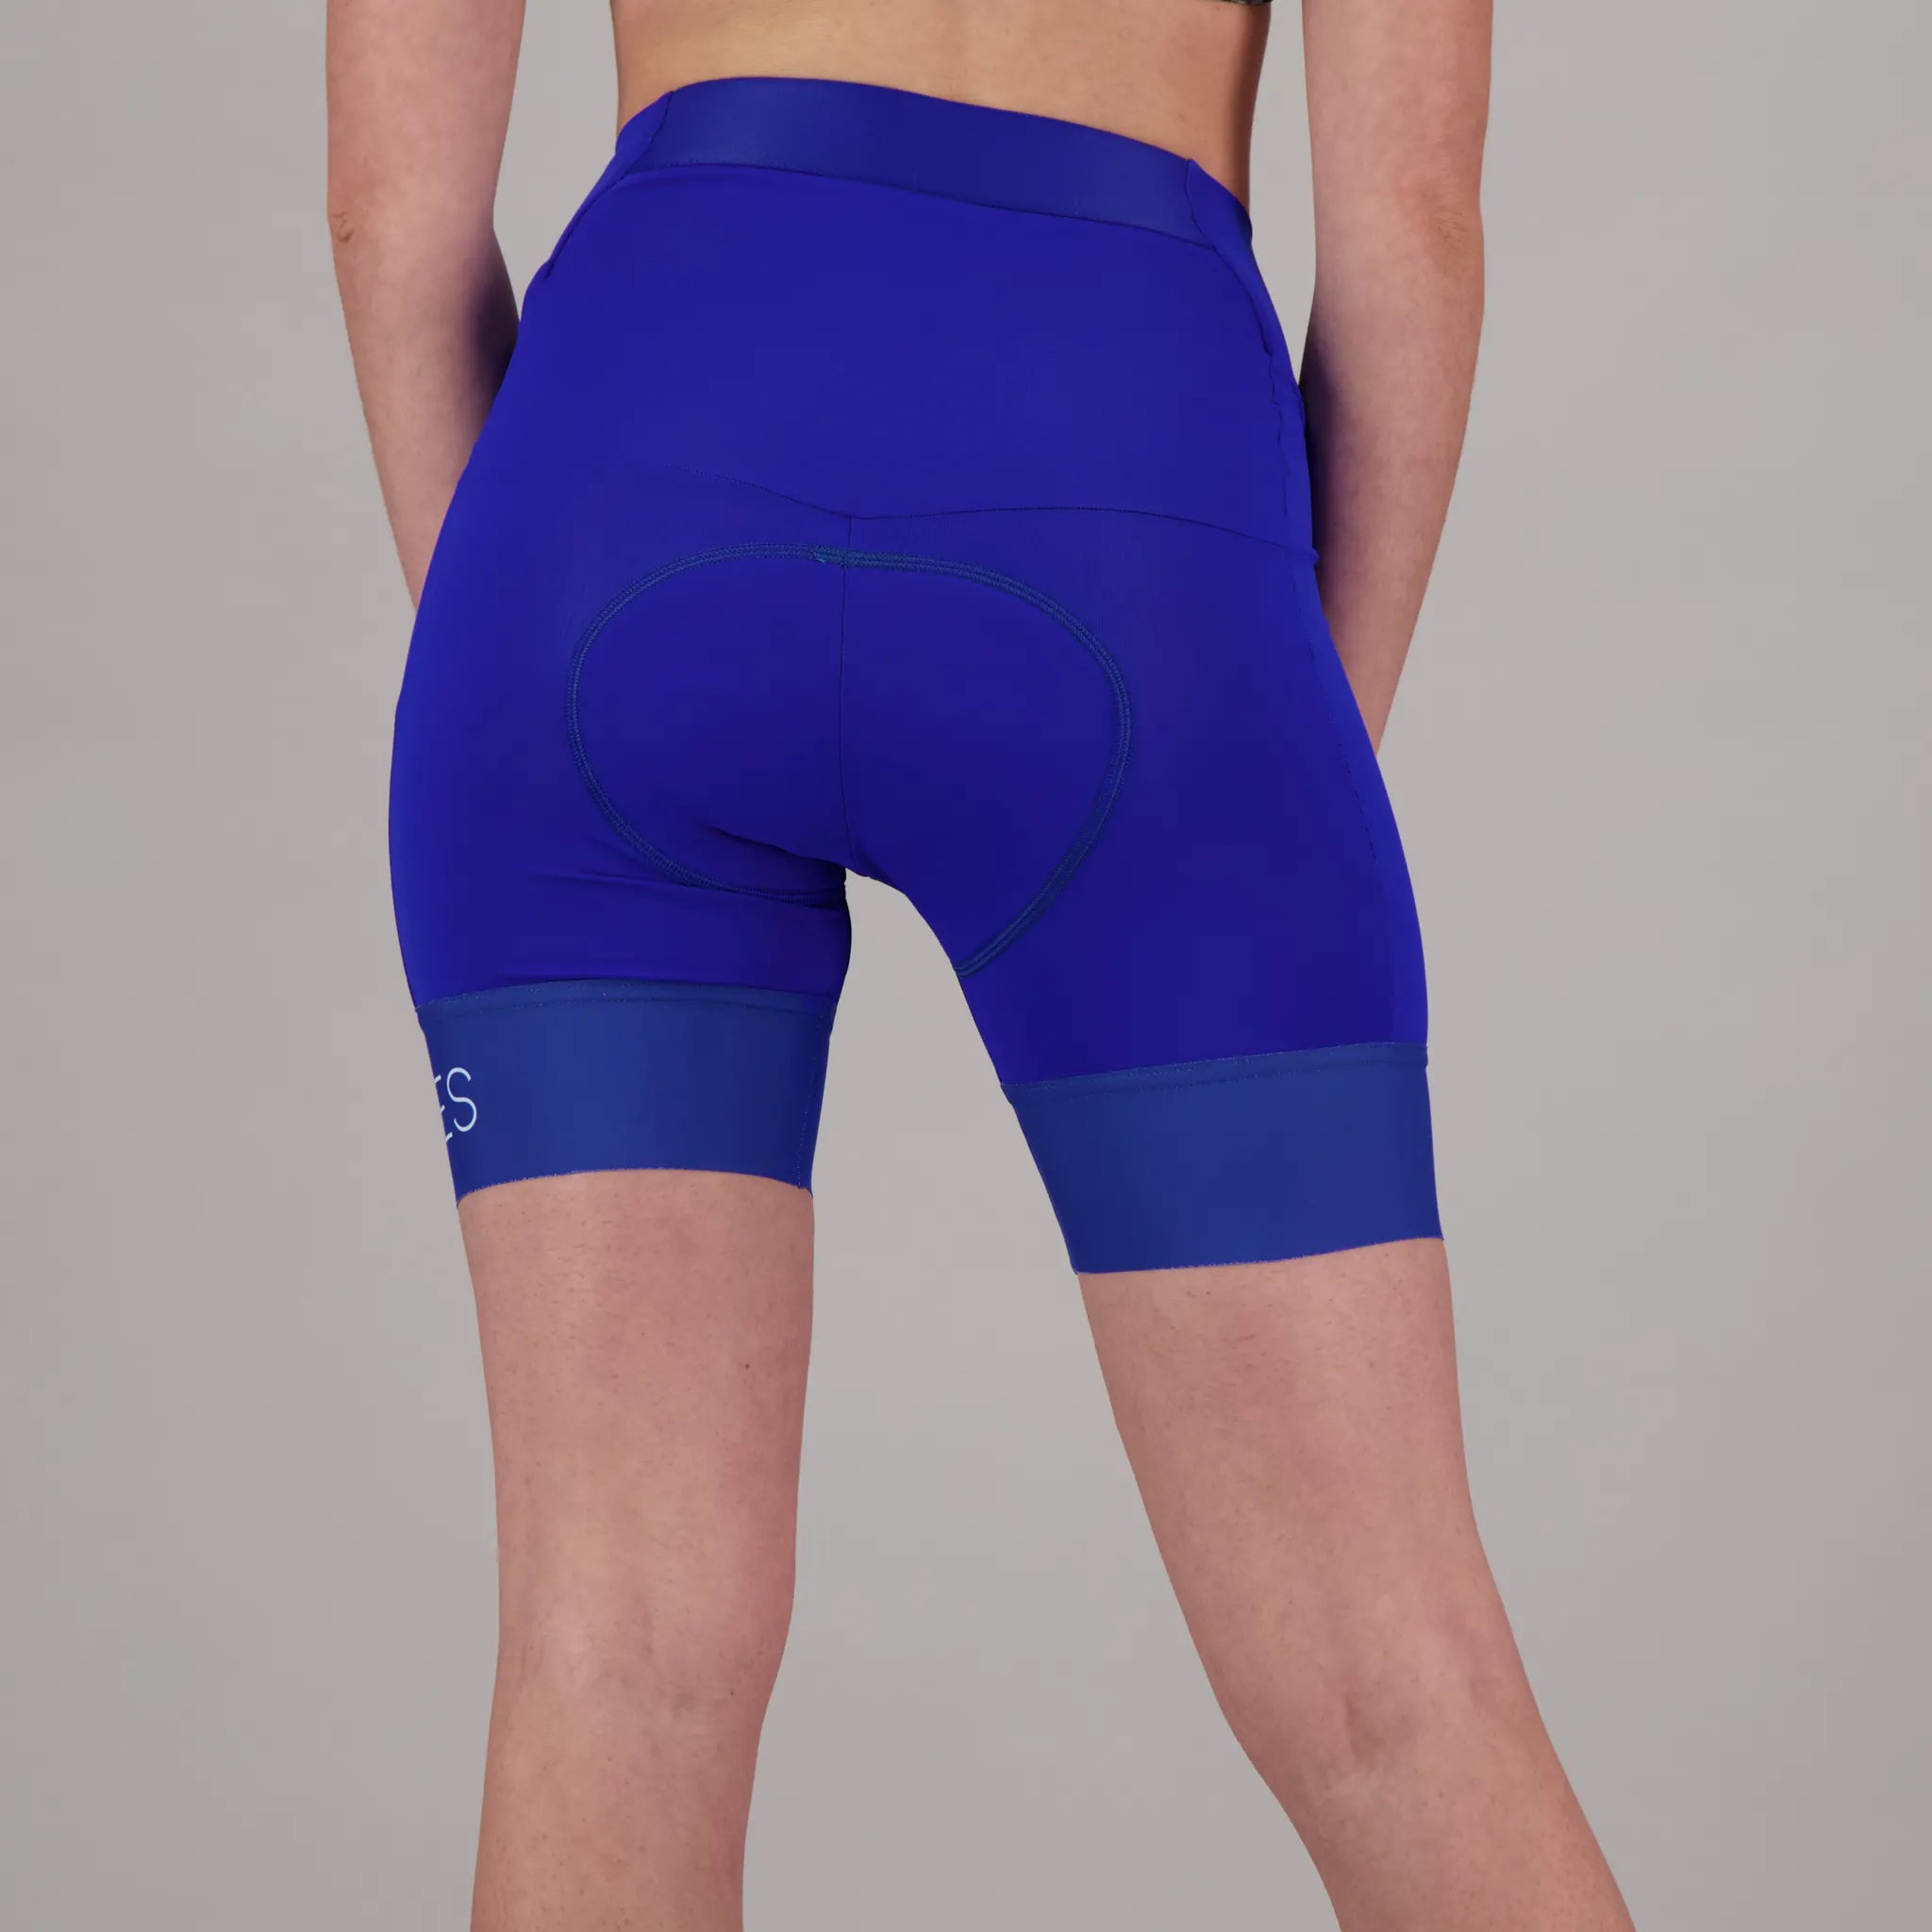 Naxos Women's Cycling Shorts